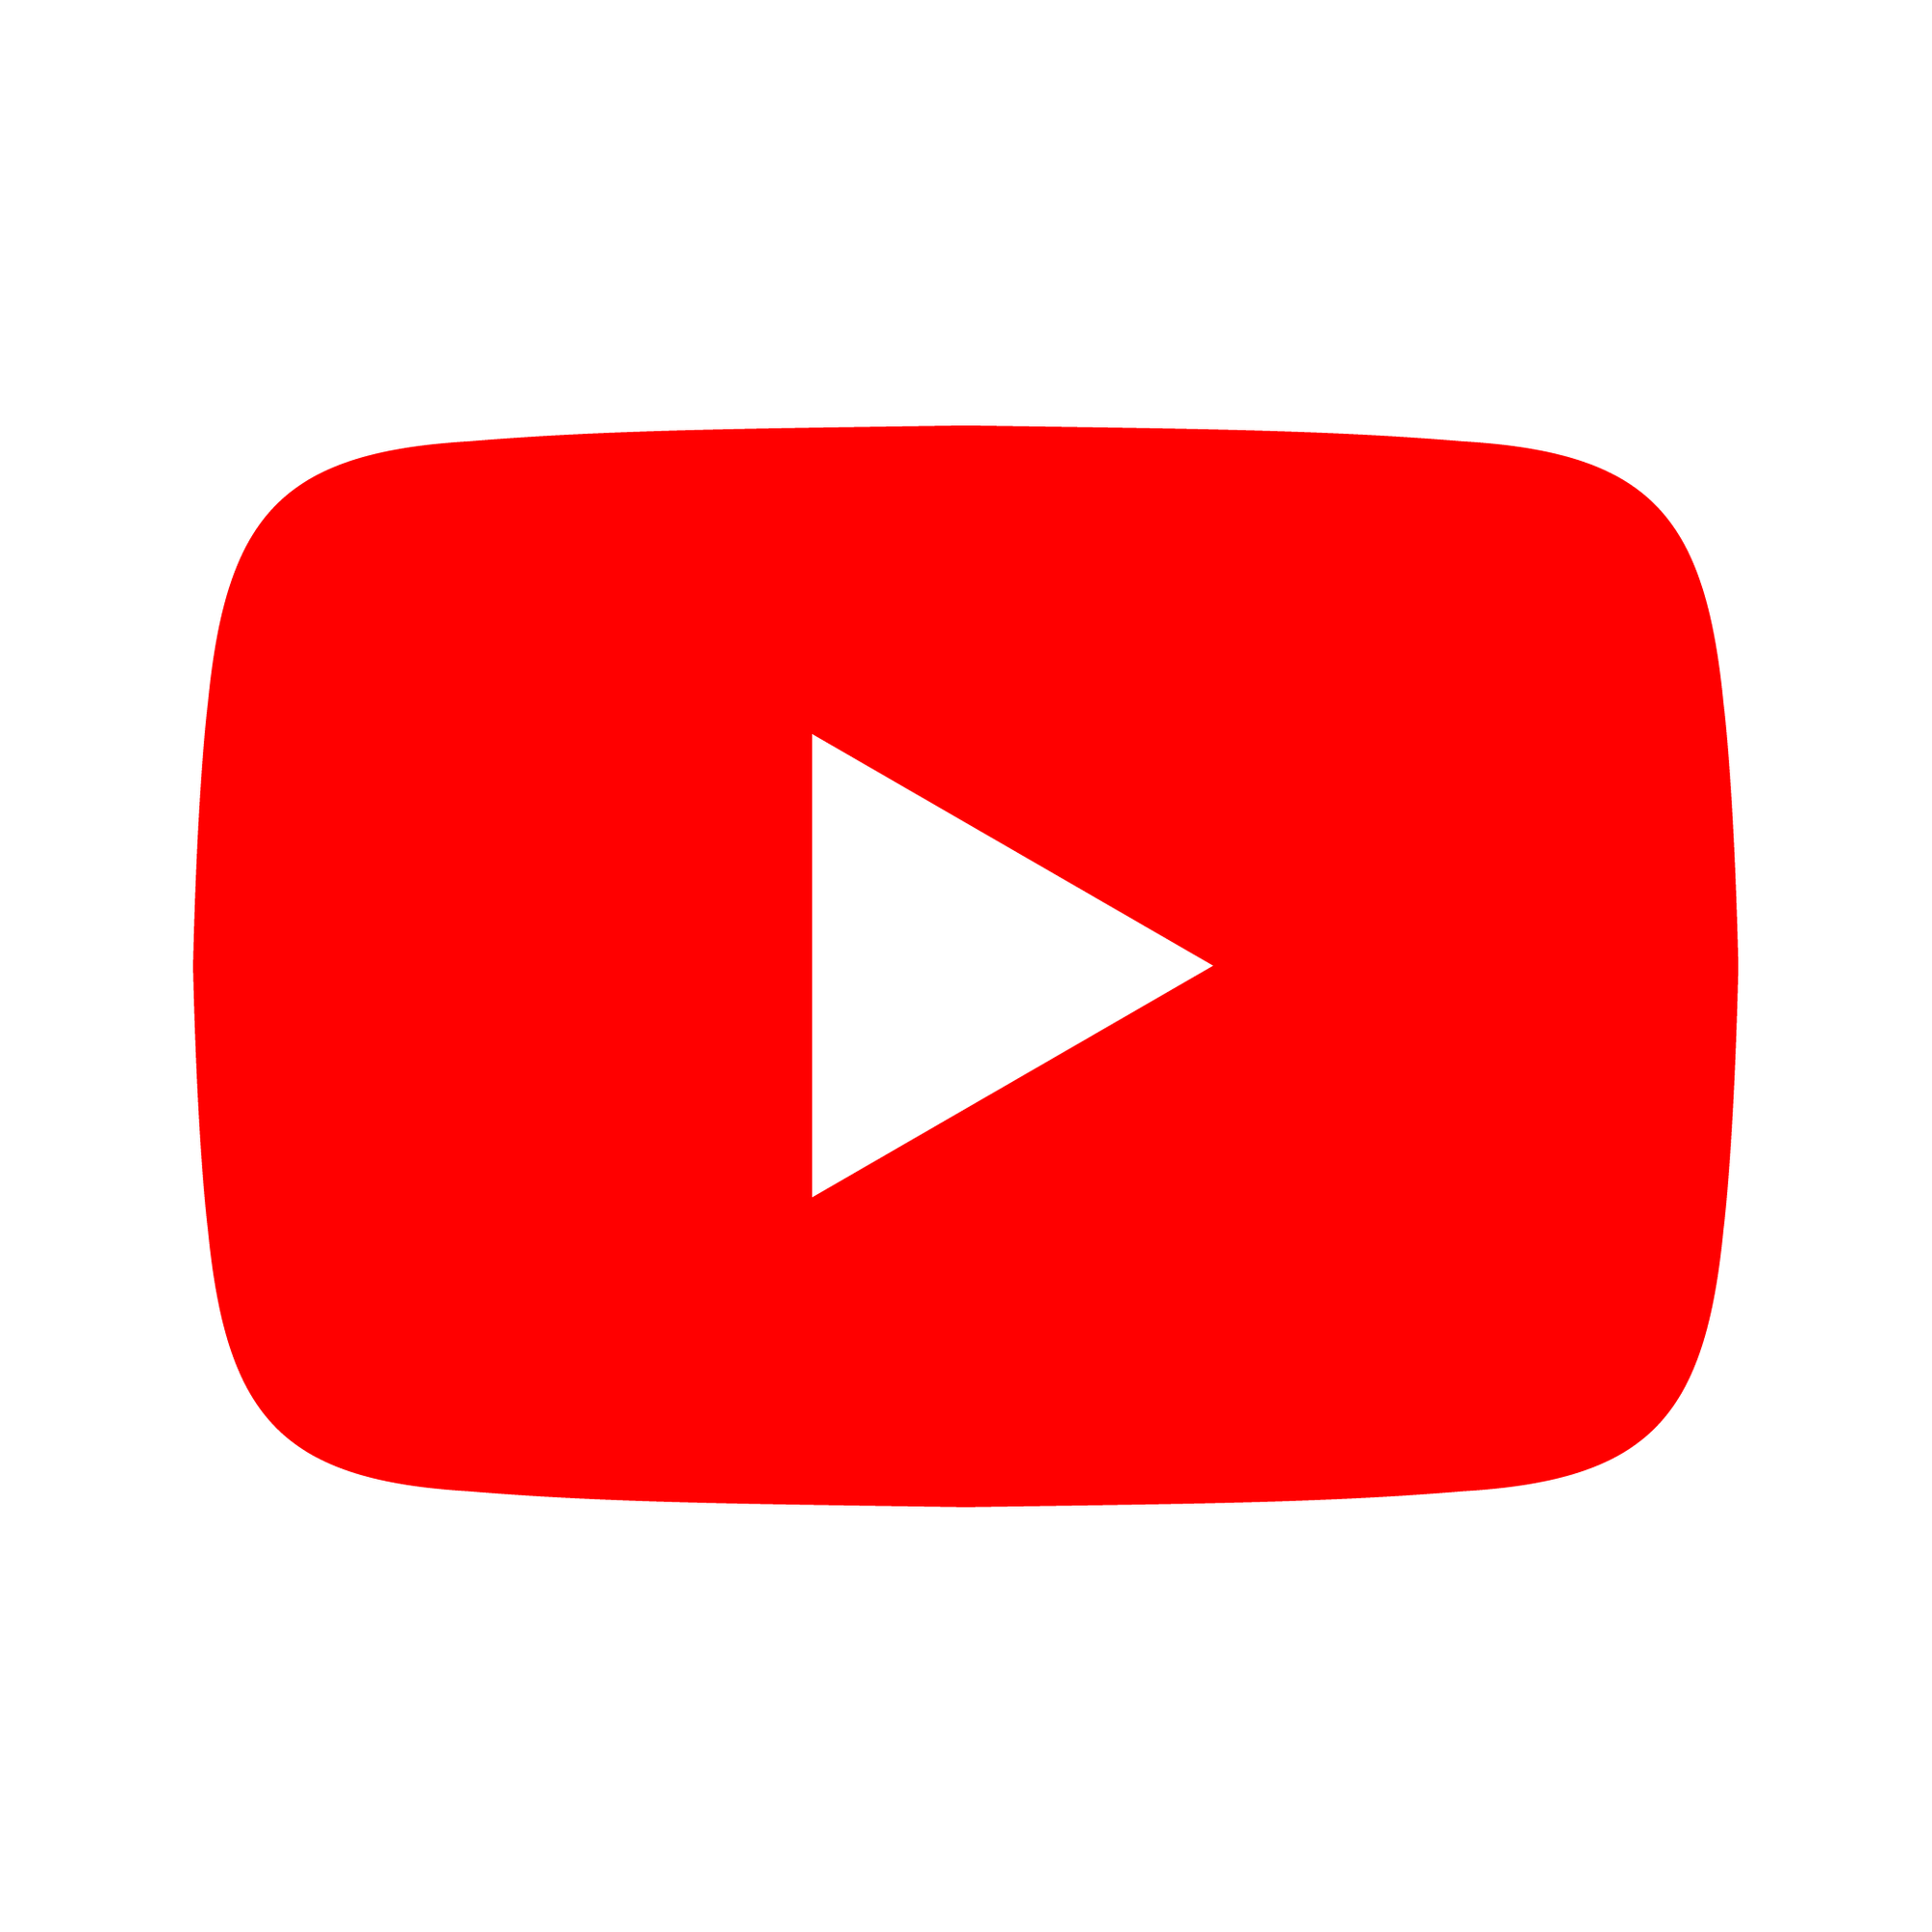 YouTube MetaData